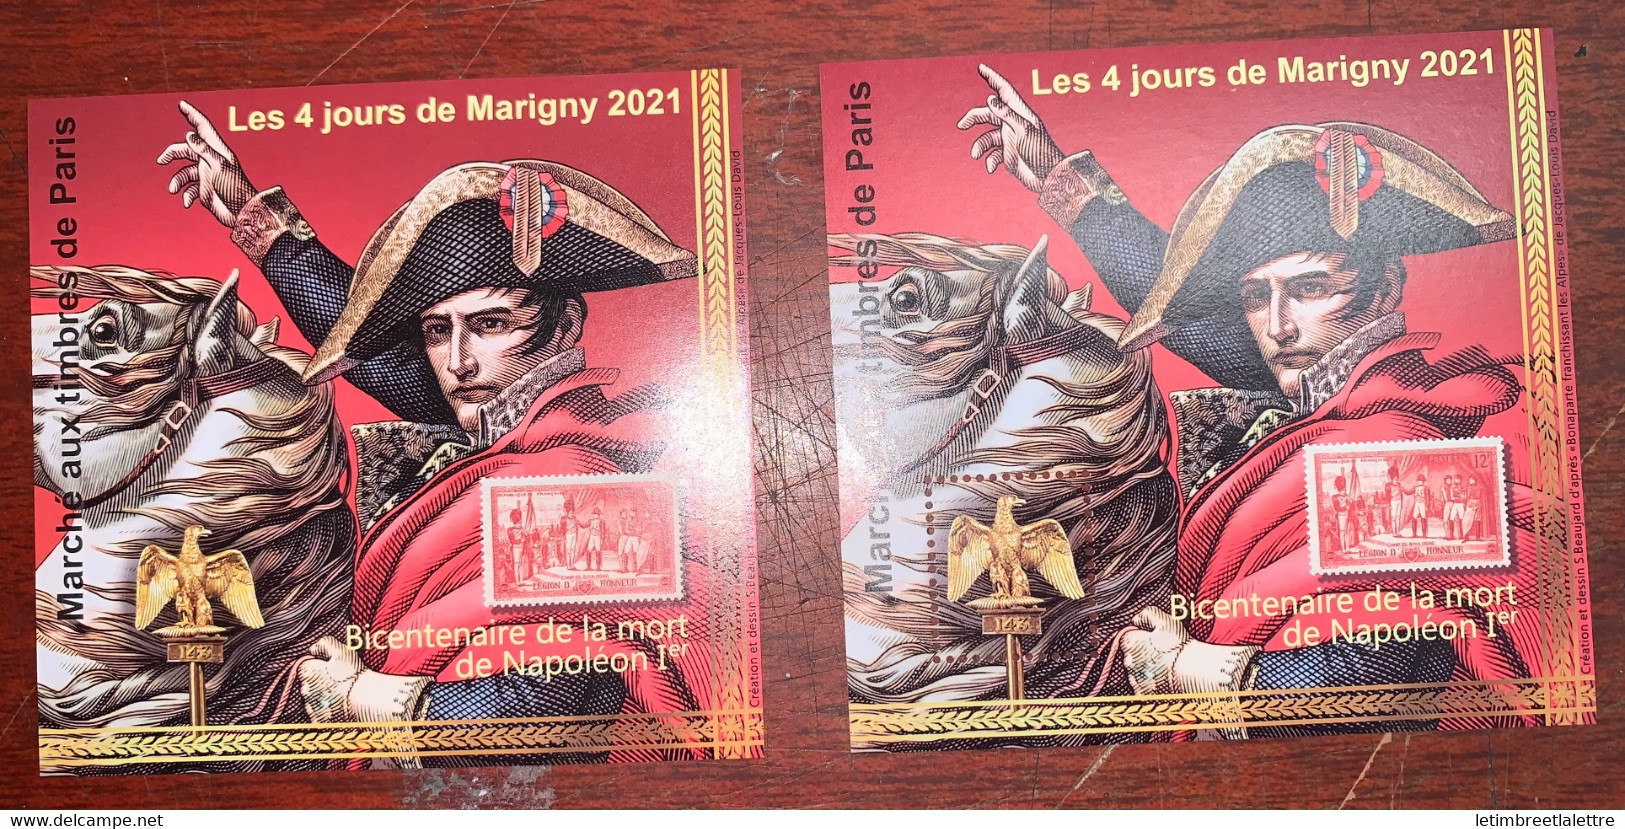 France - Bloc Souvenir Marigny - Neuf Sans Charnière ** - Bicentenaire De La Mort De Napoléon 1er - 2021 - Souvenir Blocks